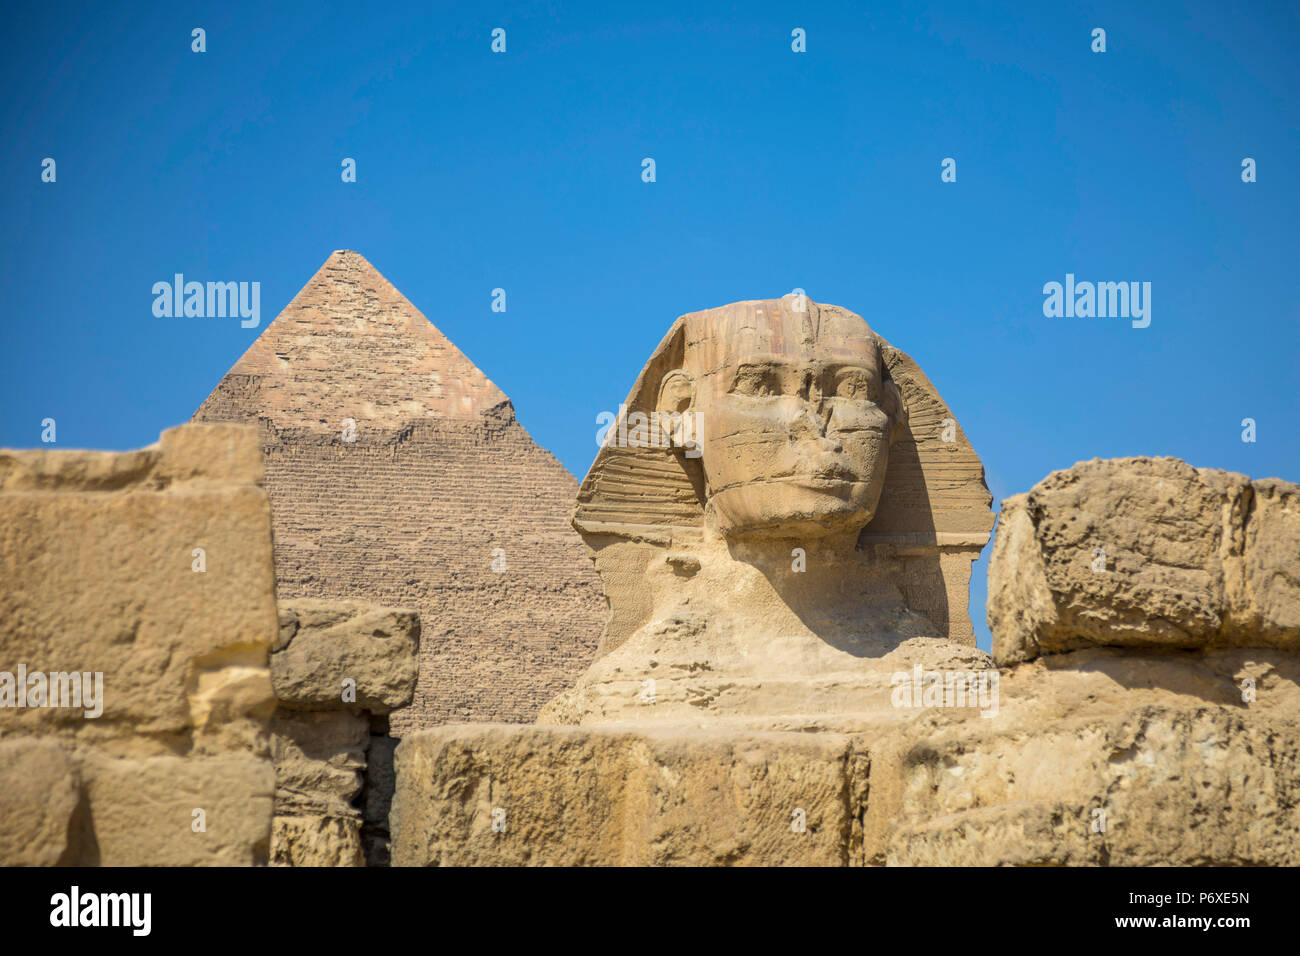 La sfinge e la piramide di Khafre (Chephren), Piramidi di Giza, Giza, il Cairo, Egitto Foto Stock